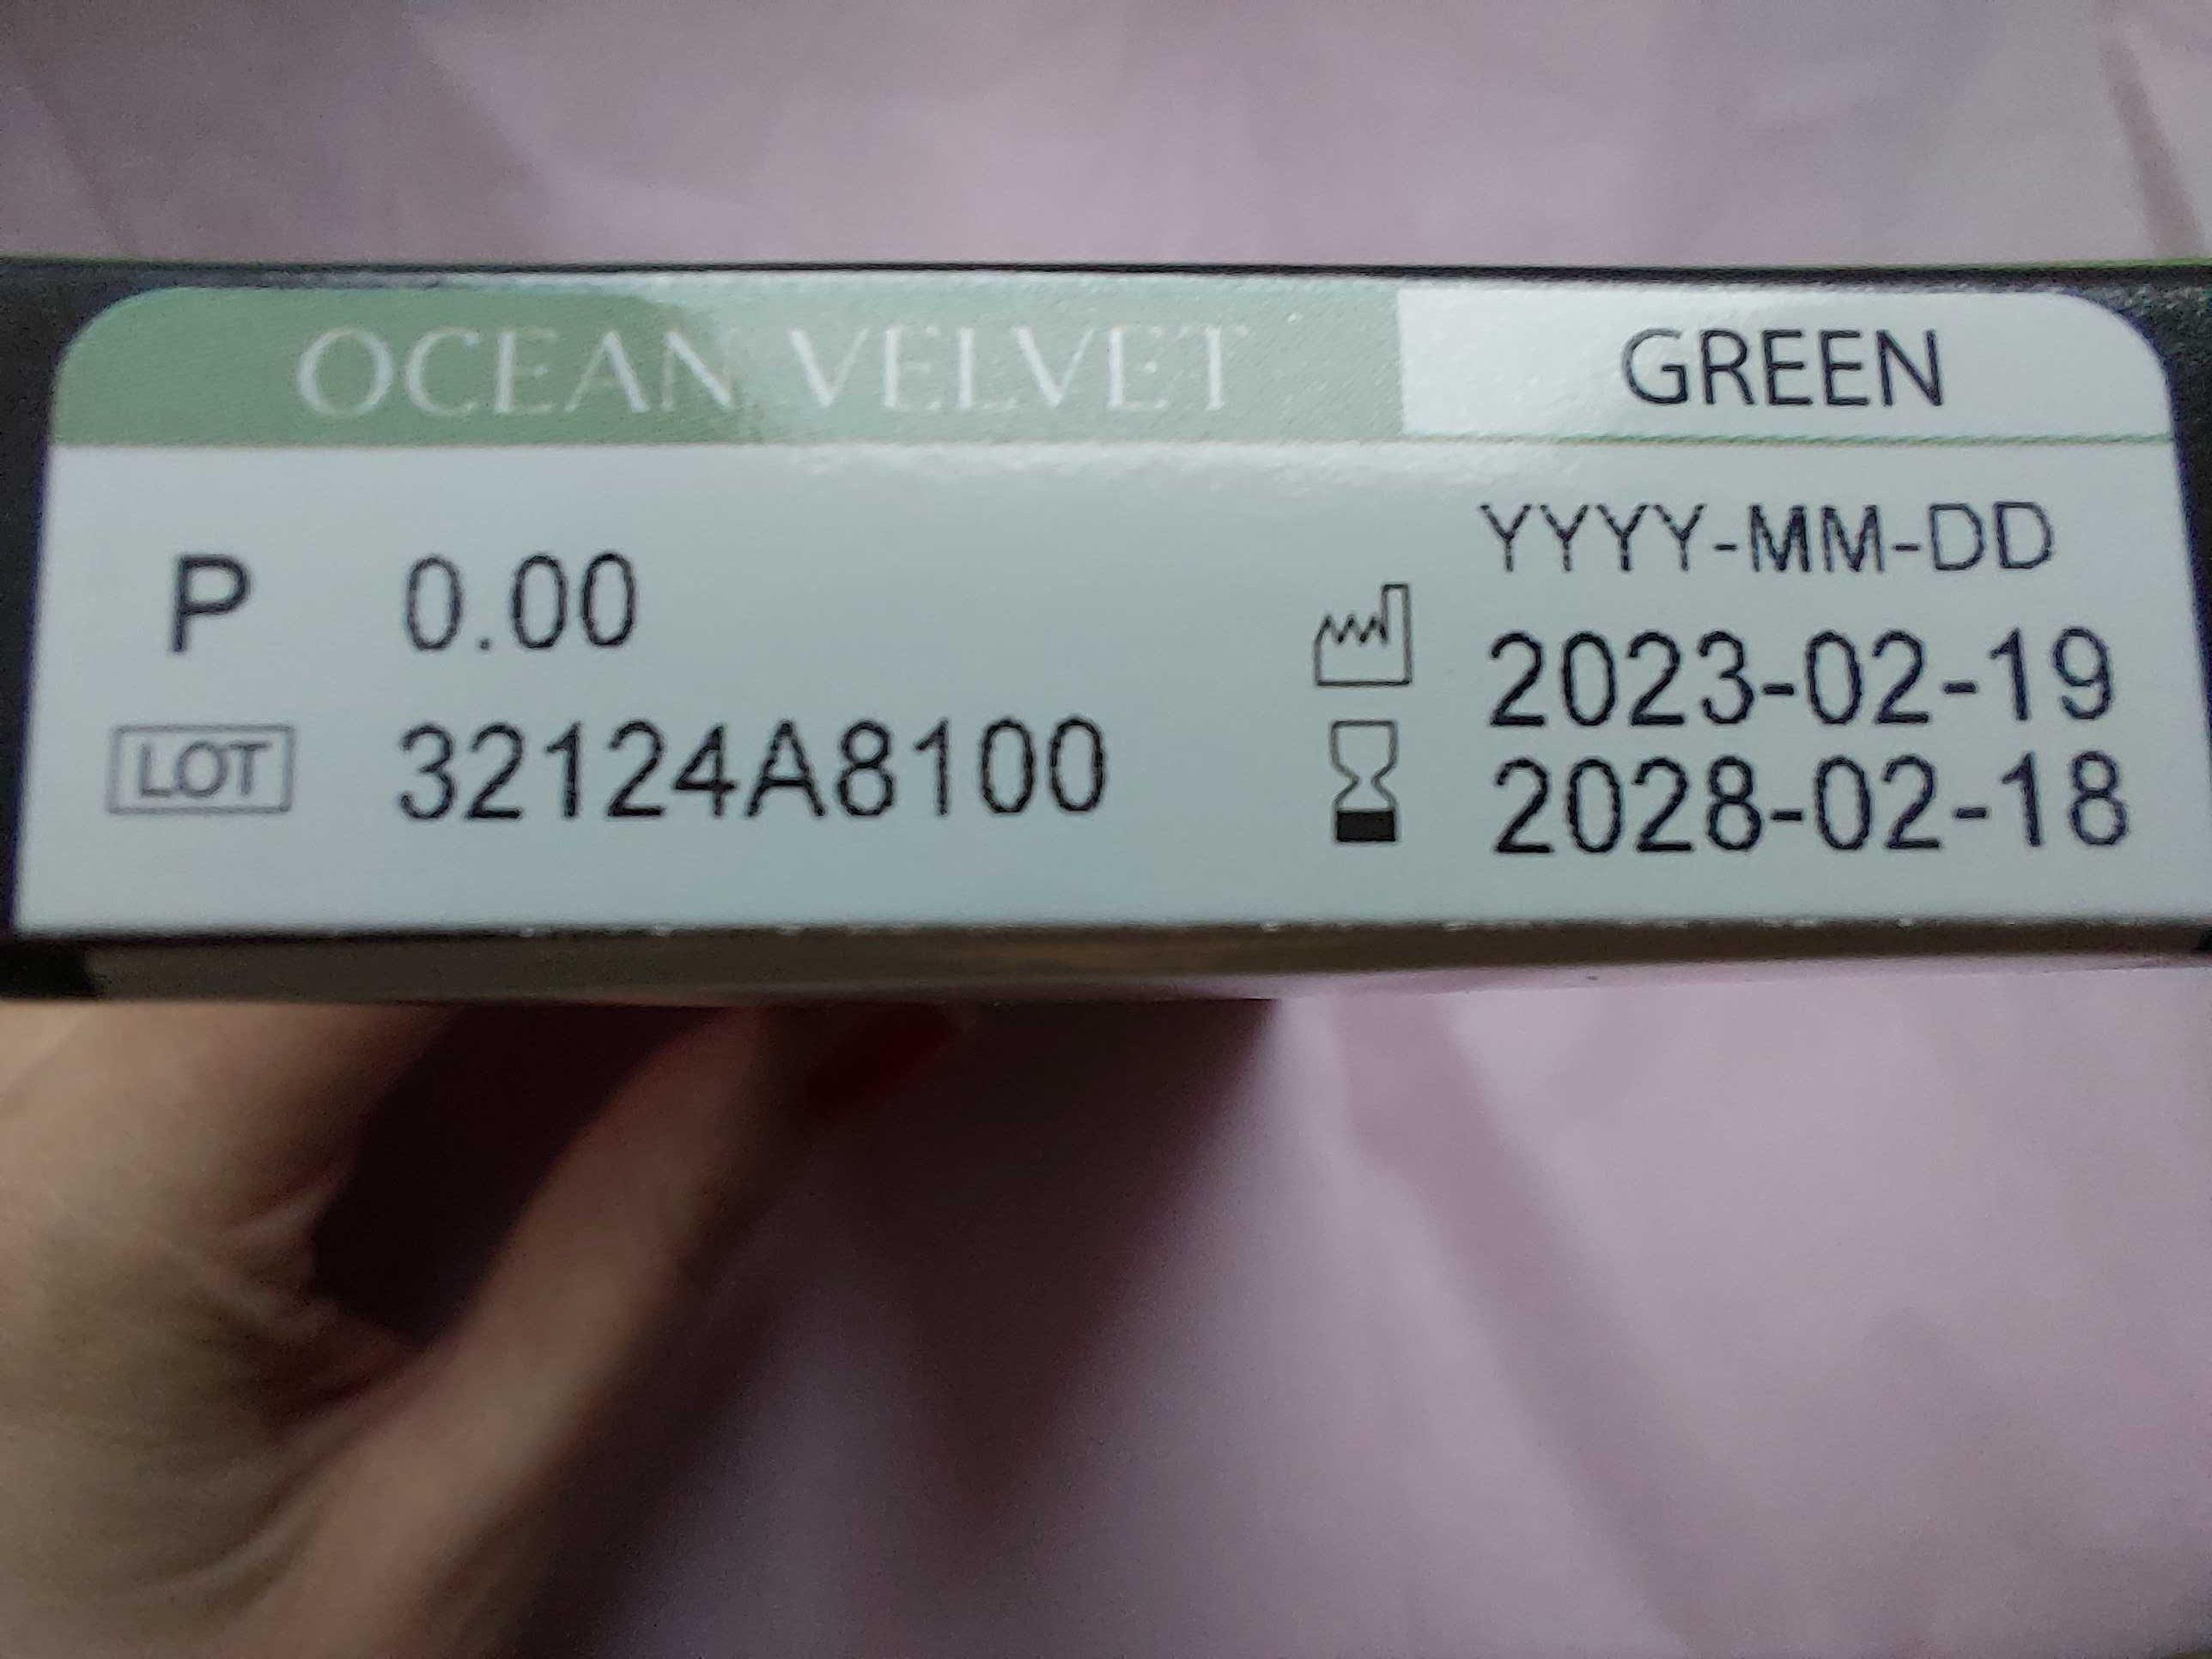 OLENS soczewki kontaktowe zielone Ocean Velvet green